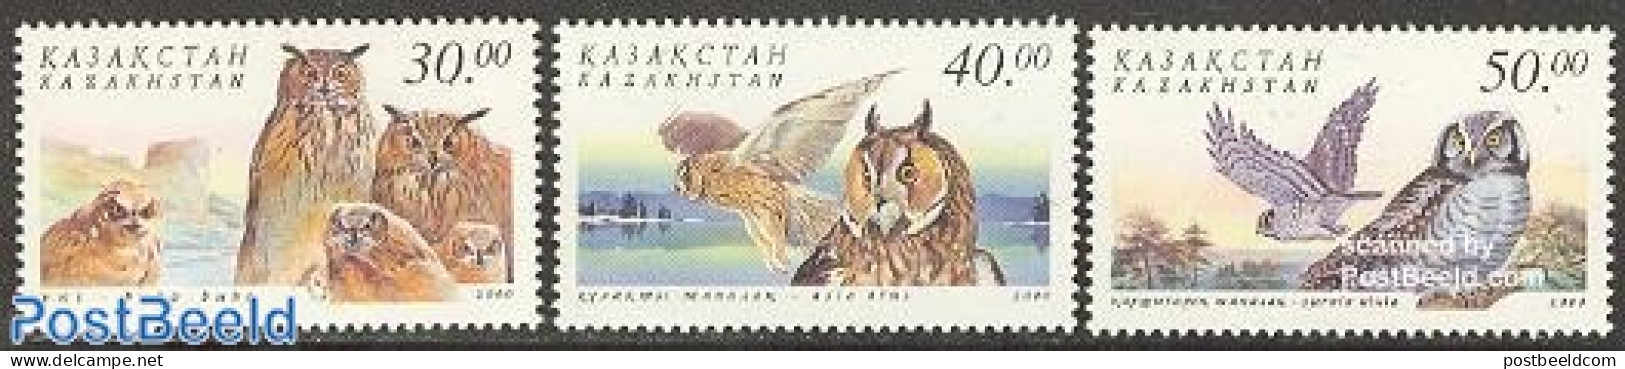 Kazakhstan 2001 Owls 3v, Mint NH, Nature - Birds - Birds Of Prey - Owls - Kasachstan